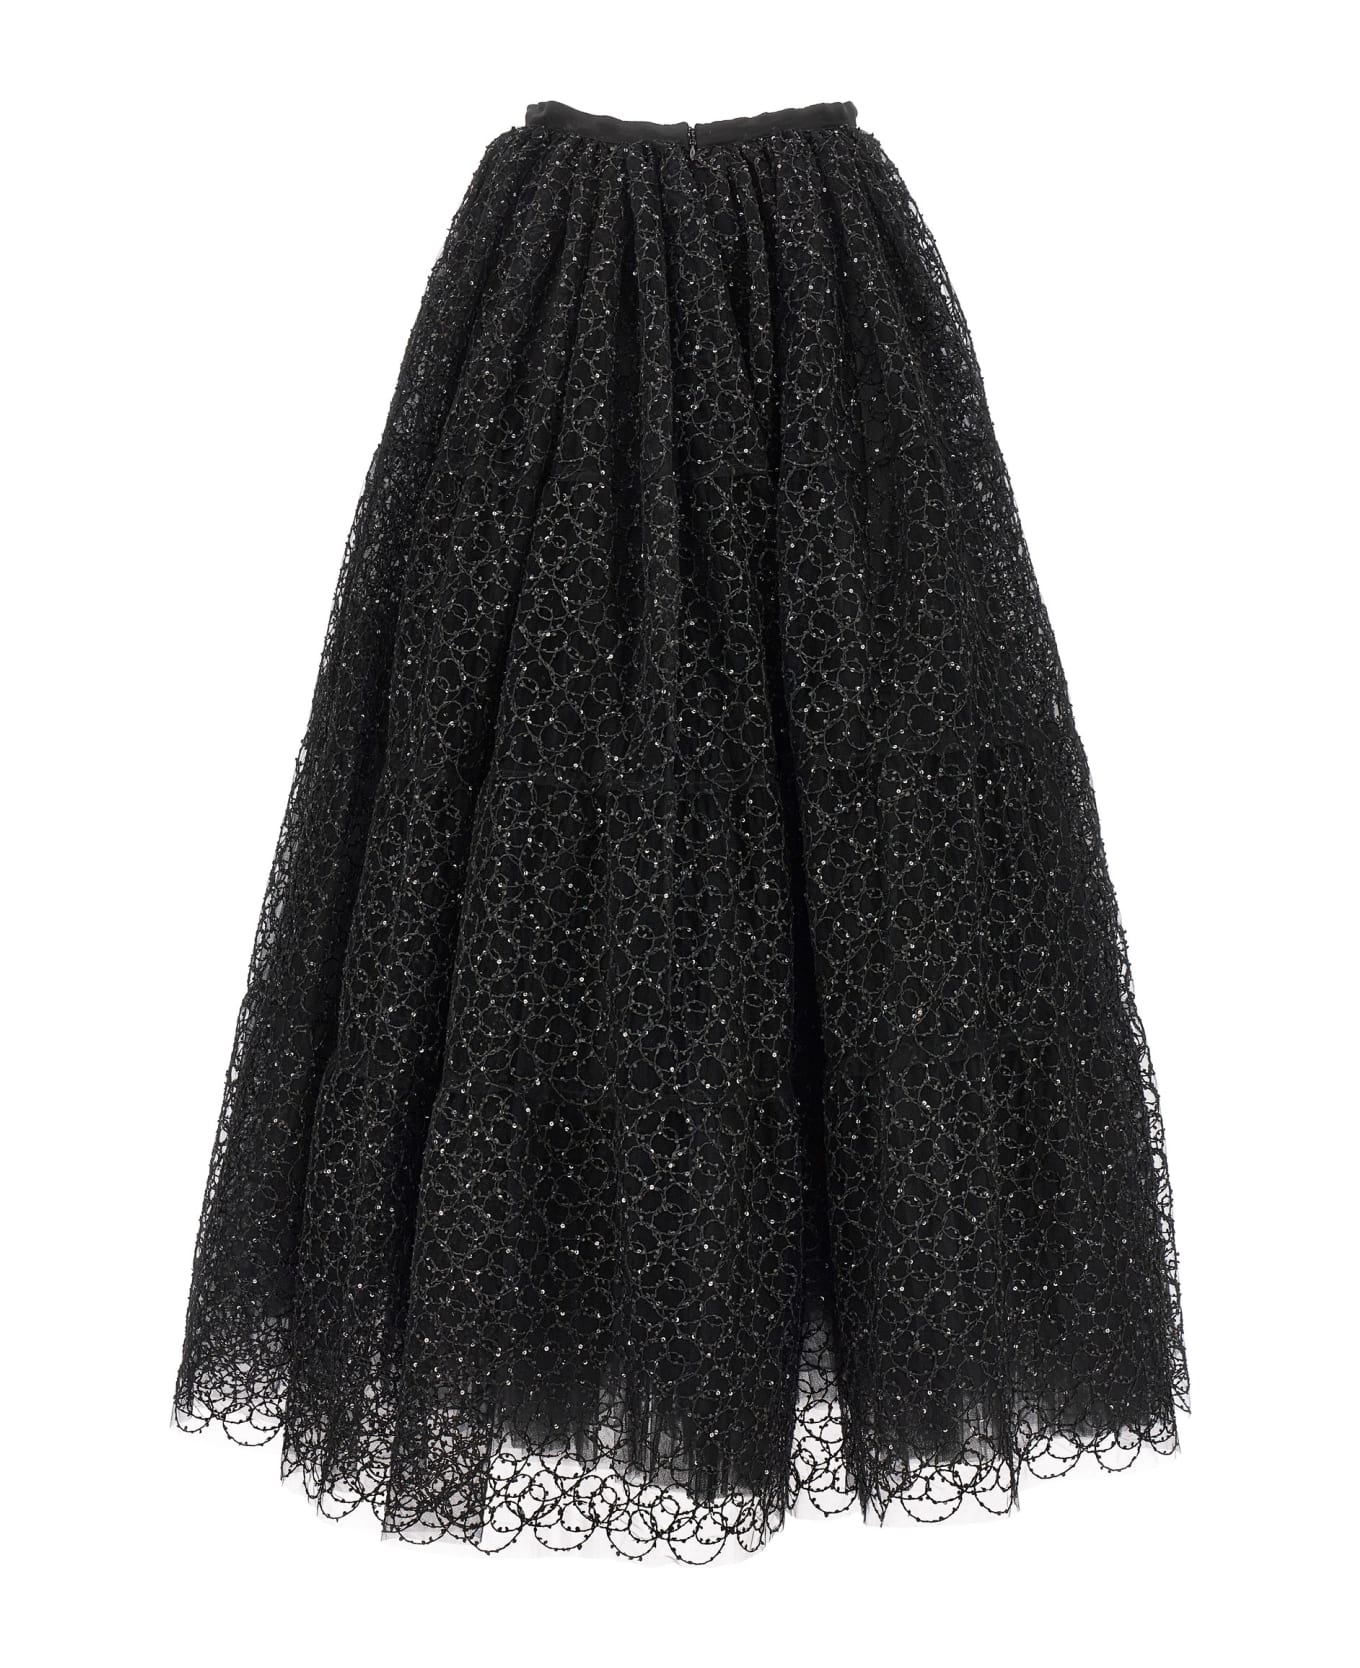 Giambattista Valli Embroidered Tulle Skirt - Black  